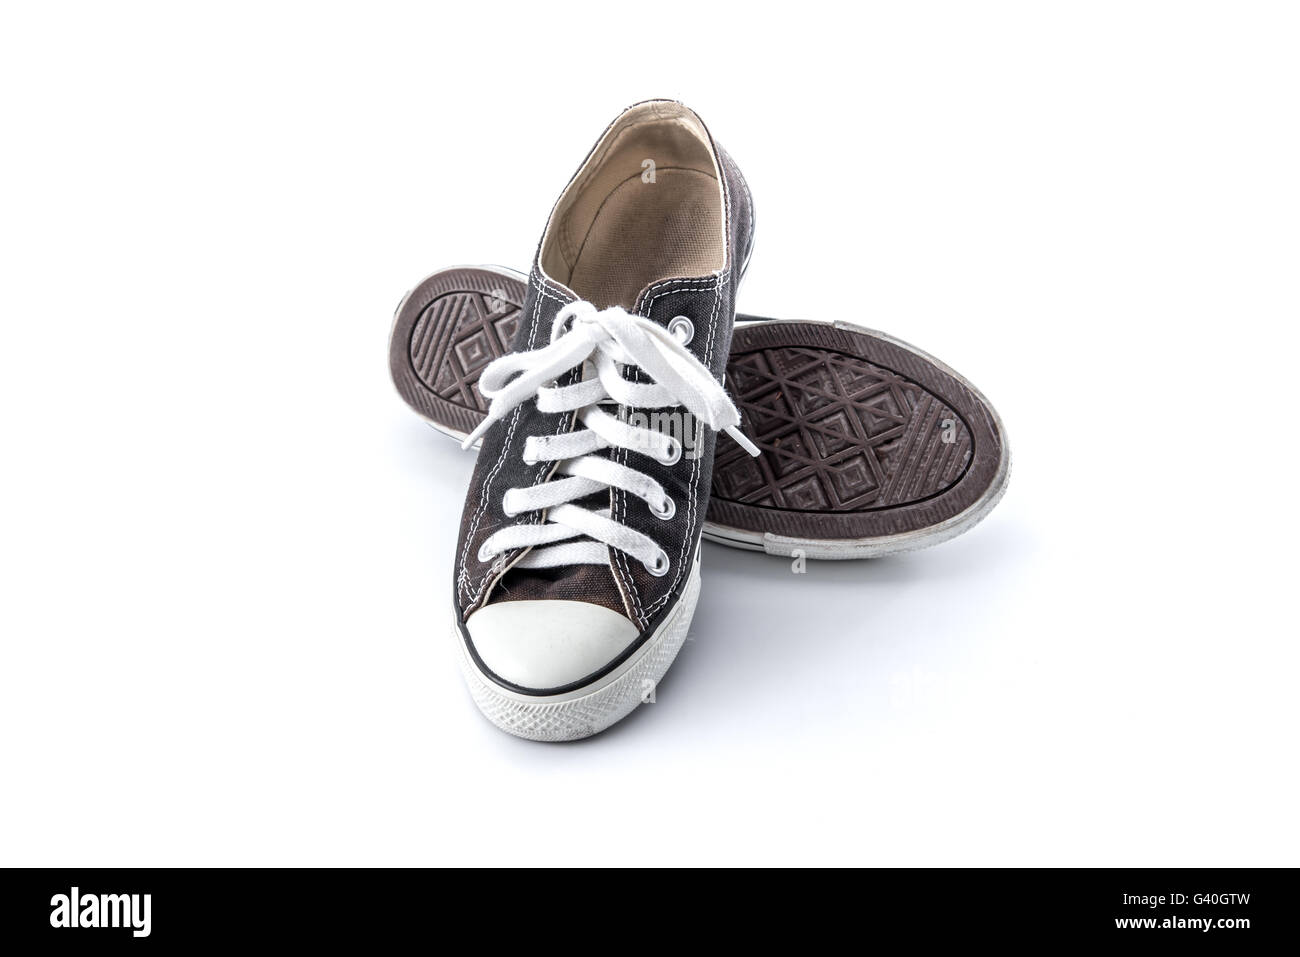 black grunge shoes on white background Stock Photo - Alamy